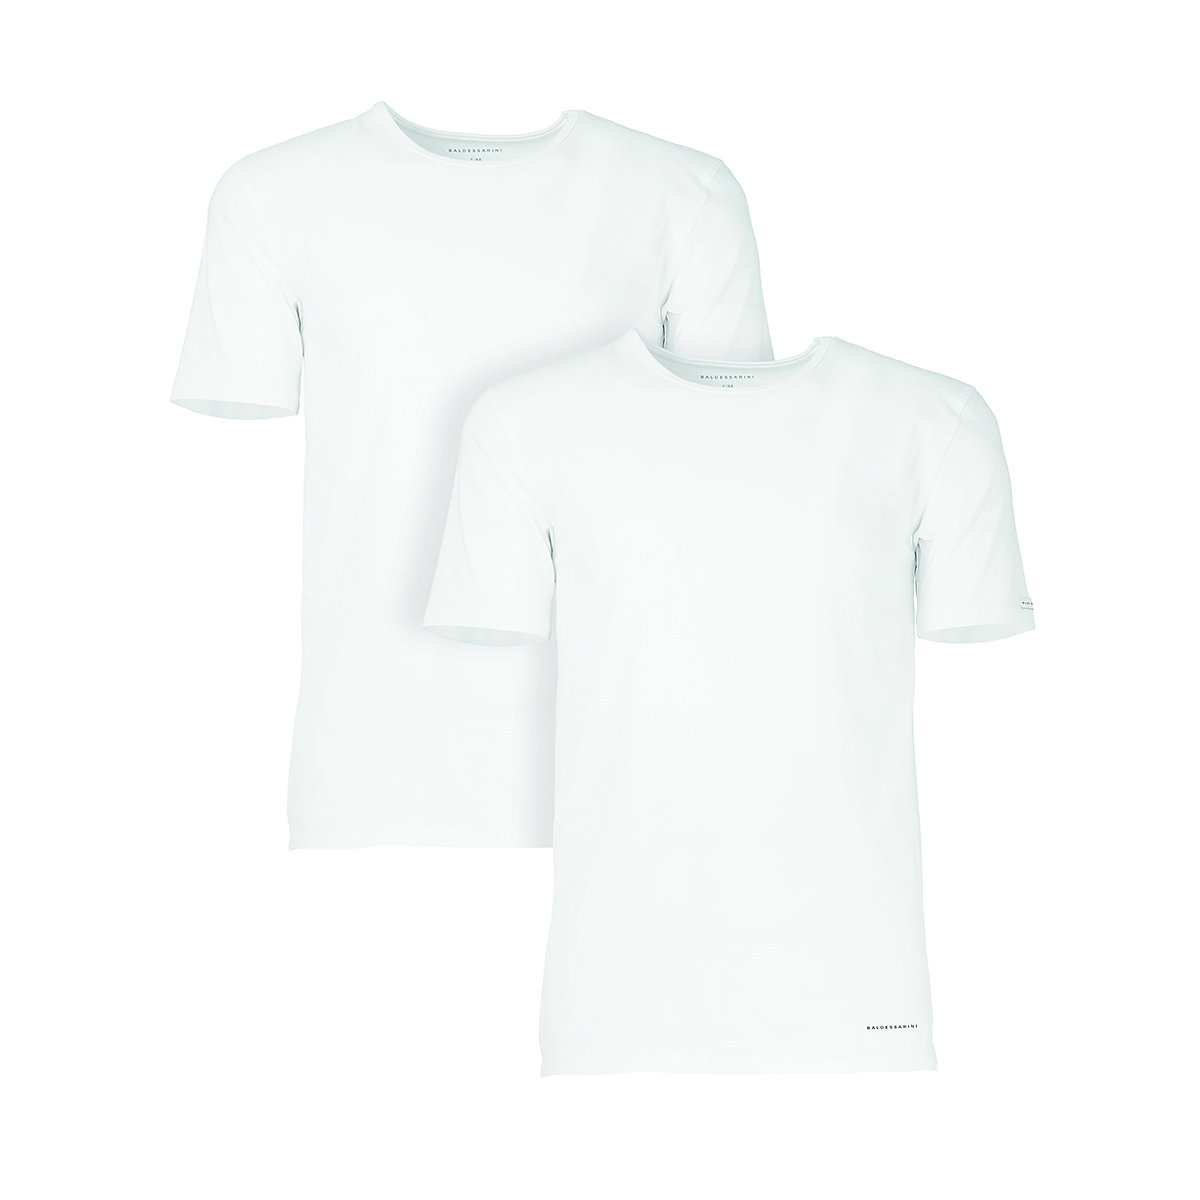 #LADC Baldessarini BALDESSARINI Herren Unterhemd 2er Pack T-Shirt Rundhals Halbarm Stretch Cotton T-Shirts weiß